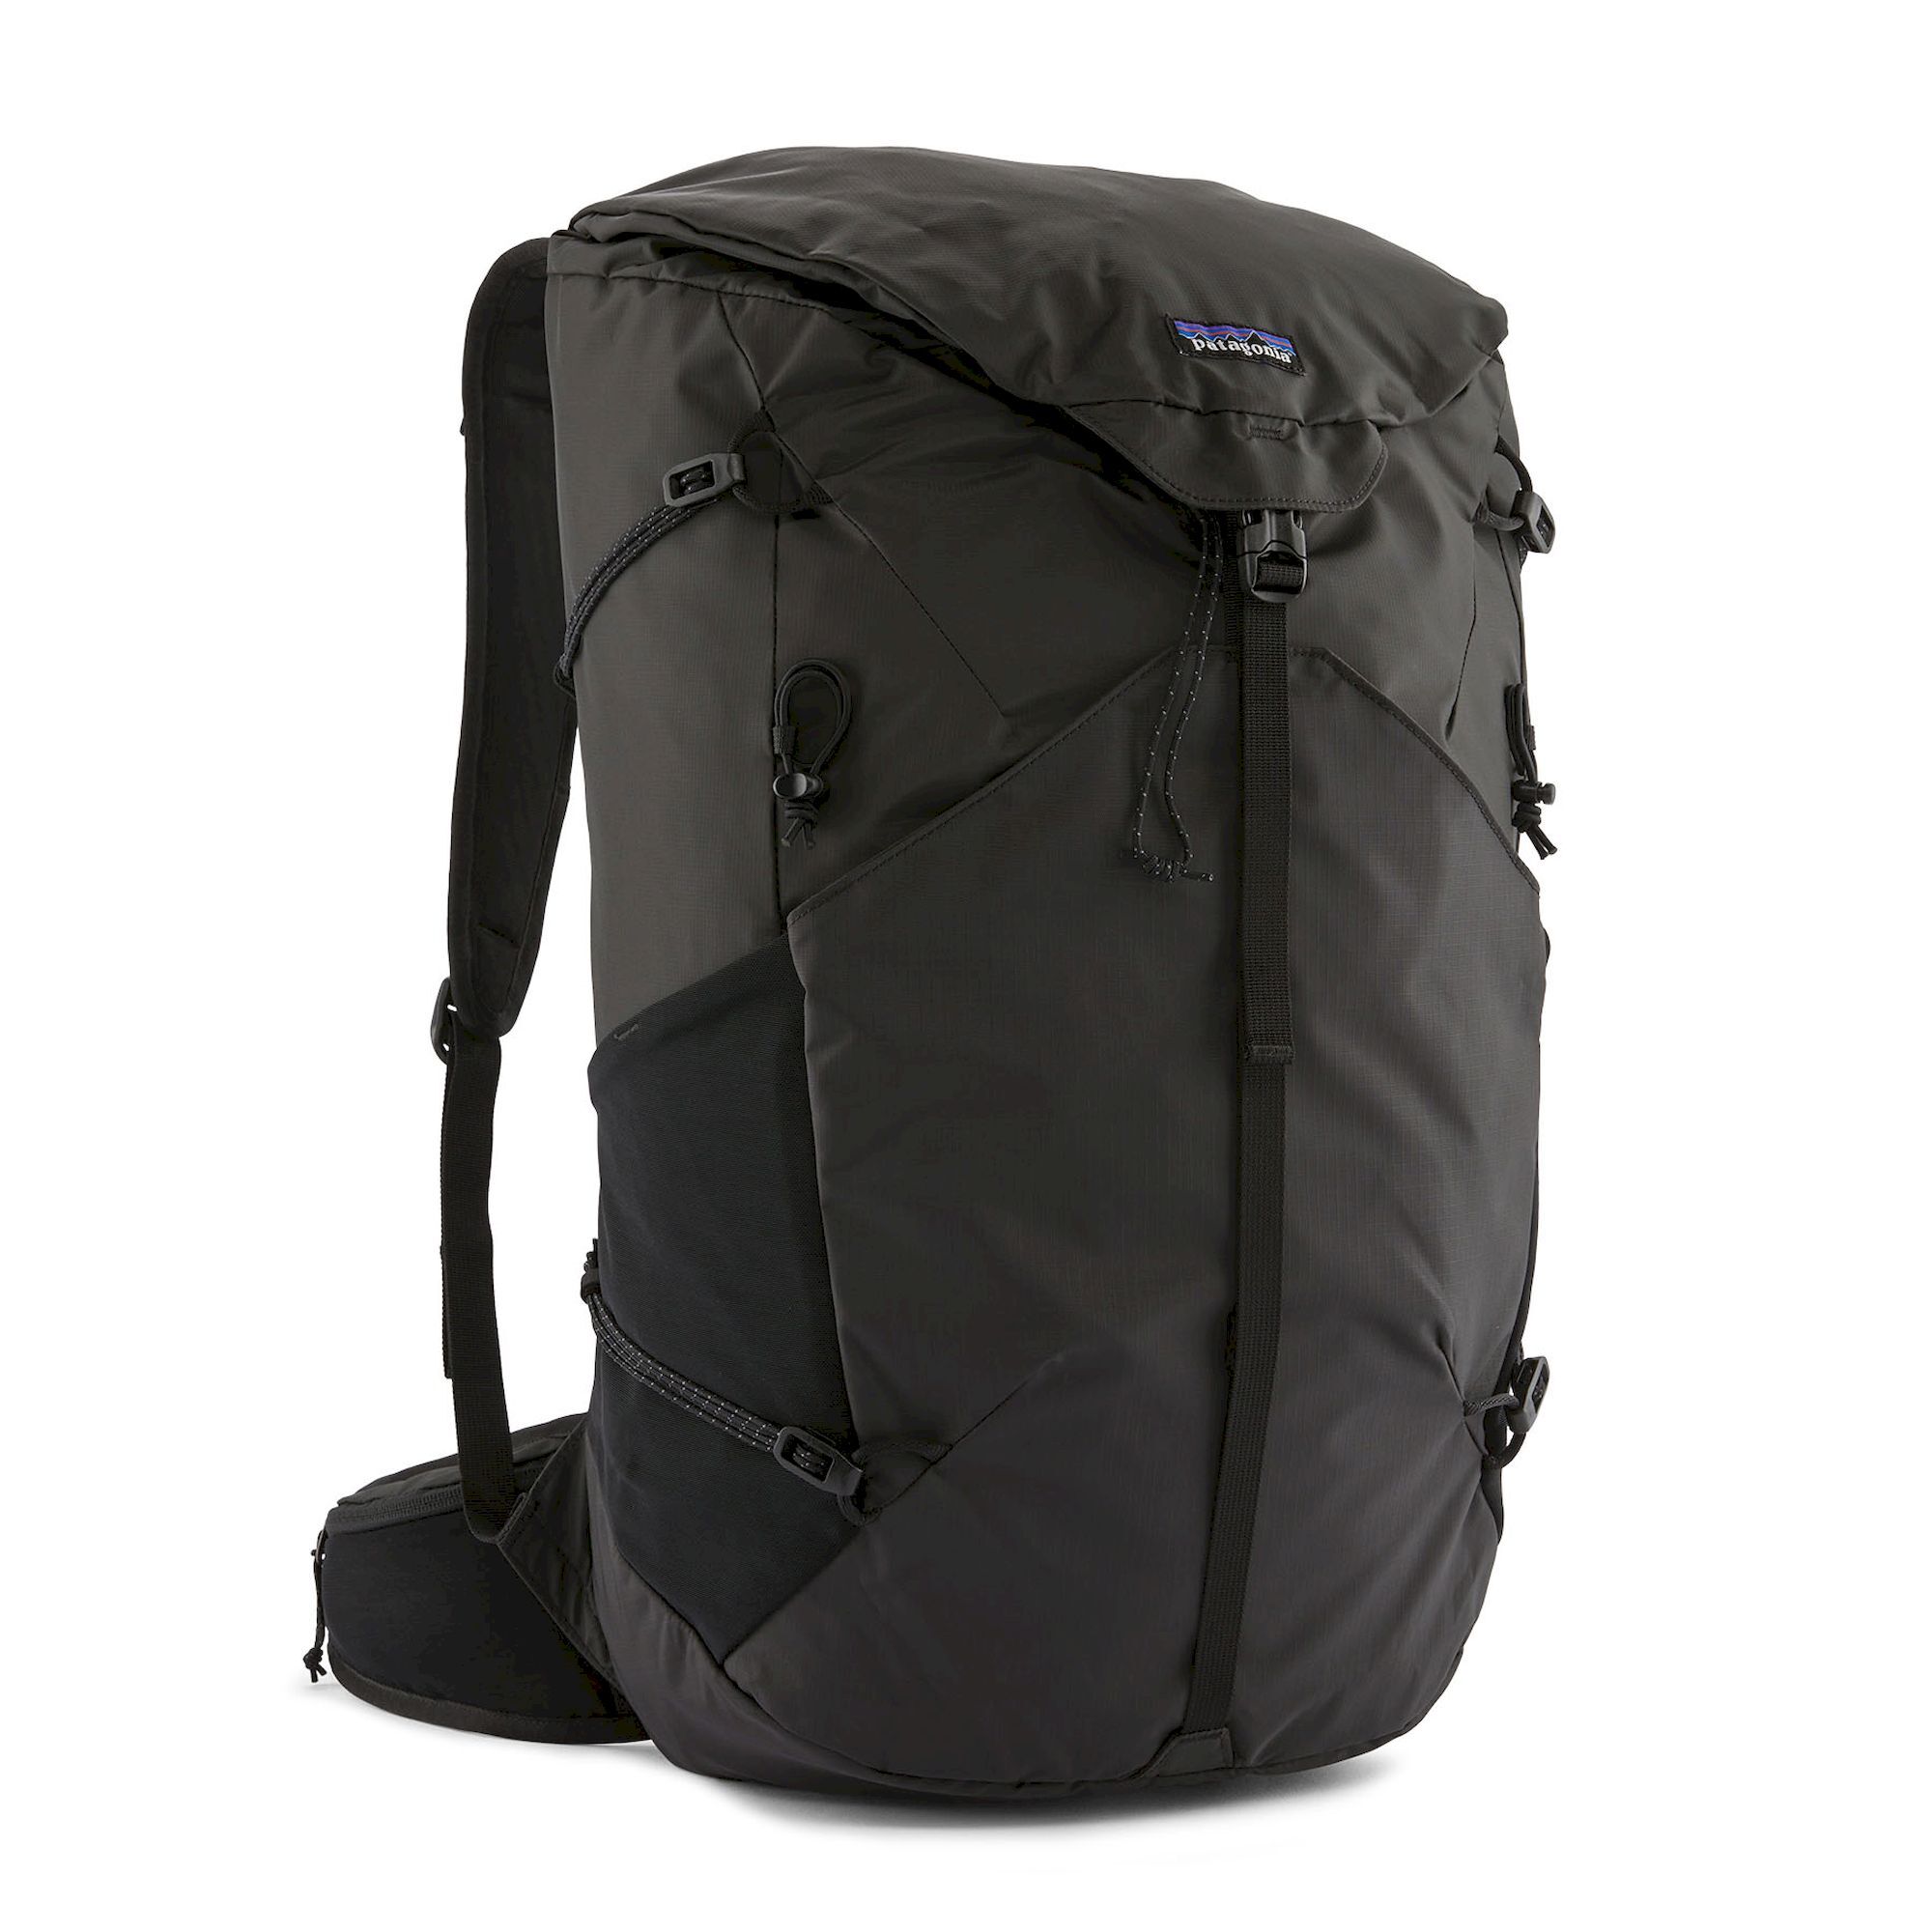 Patagonia Altvia Pack 36L - Walking backpack